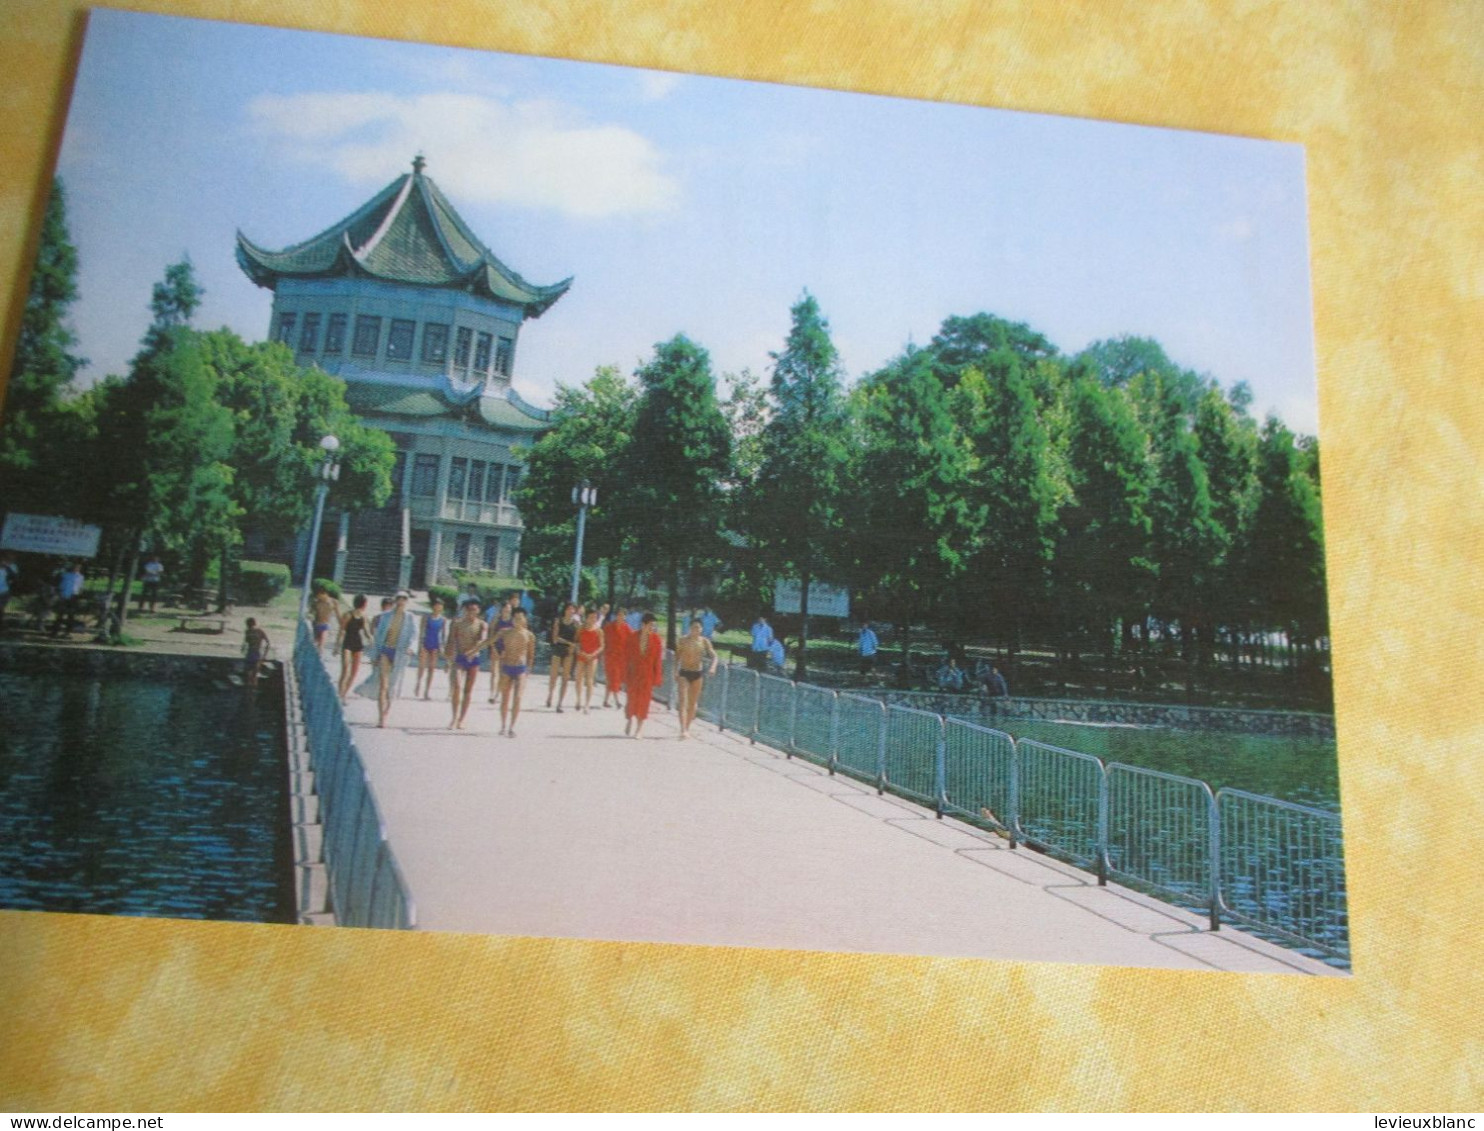 10 cartes postales anciennes/WUHAN /JIANSOU /  République Populaire de Chine / Vers 1980    JAP59